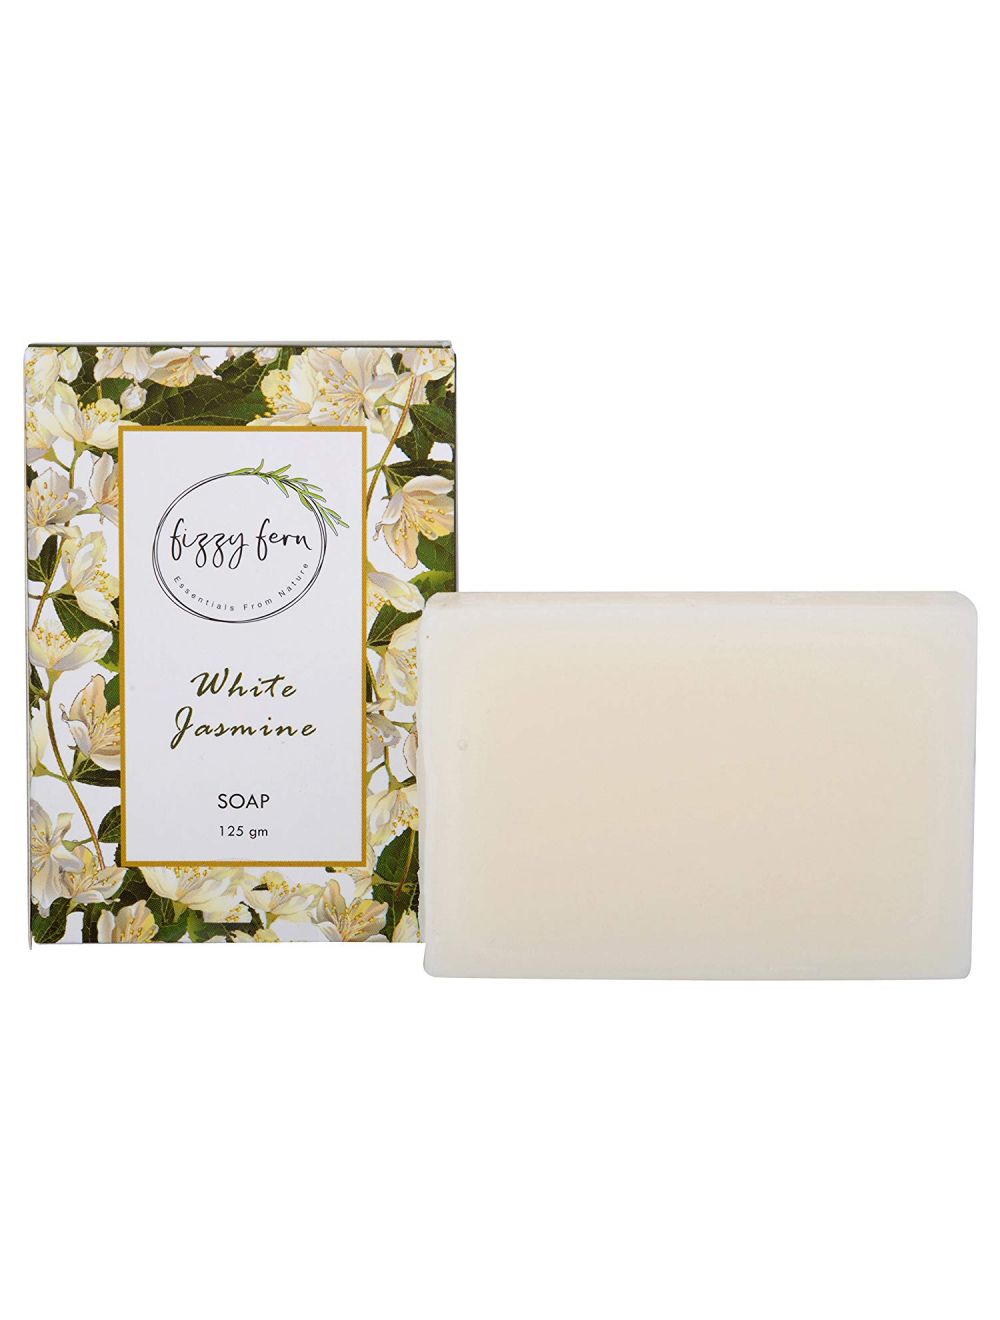 Fizzy Fern White Jasmine Soap (125gm) - Niram